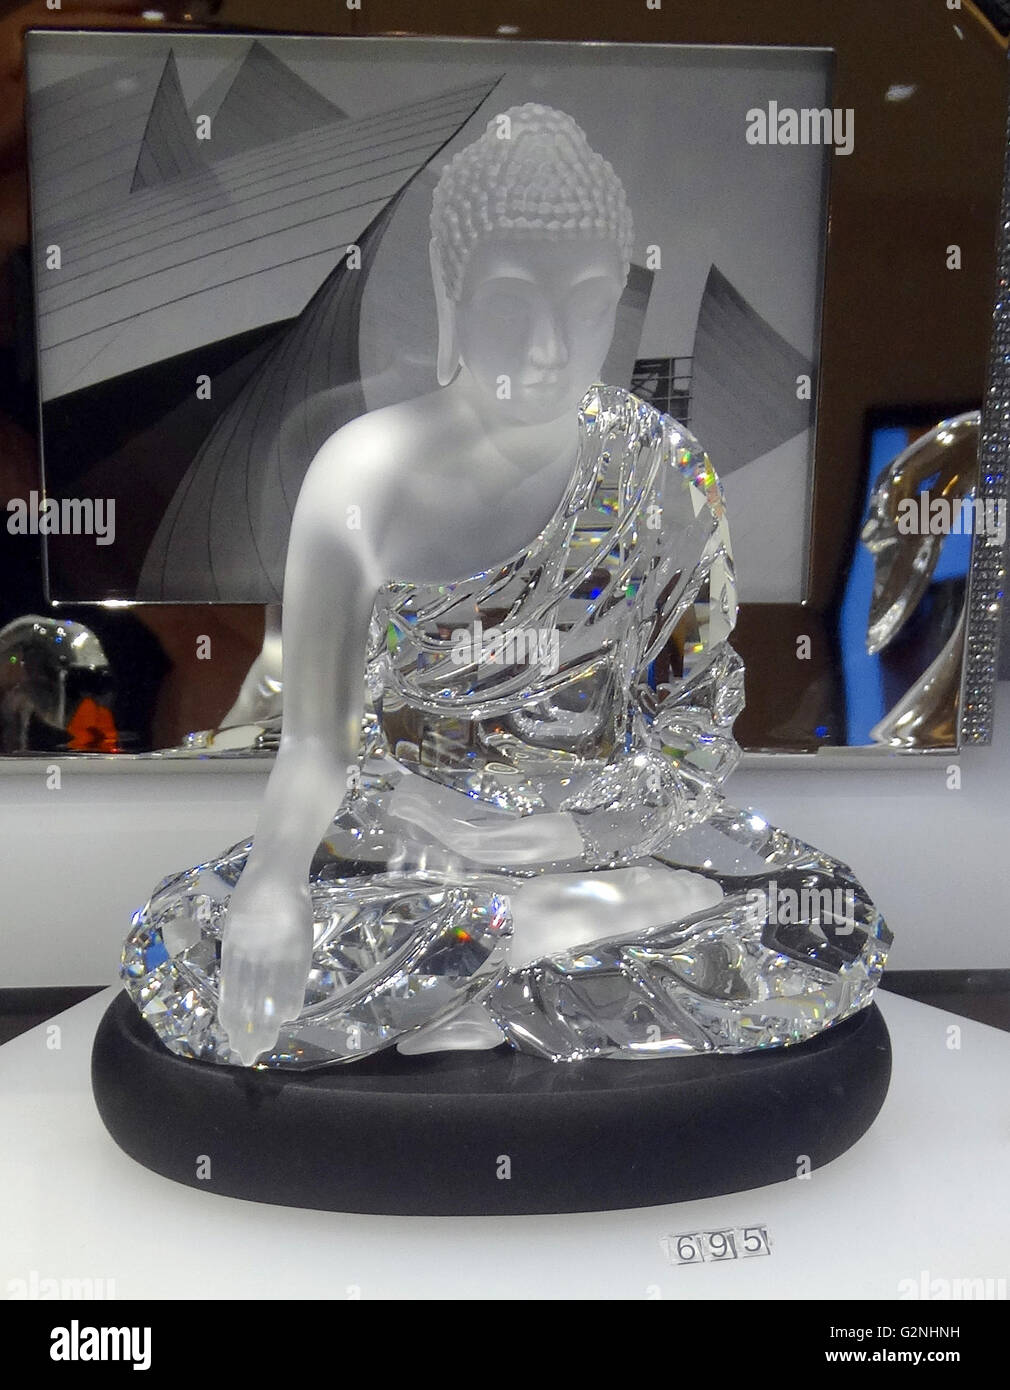 Swarovski Crystal Seated Buddha. Swarovski is an Austrian producer of  luxury cut lead glass. Founded by Daniel Swarovski (1862-1956). Dated 2014  Stock Photo - Alamy